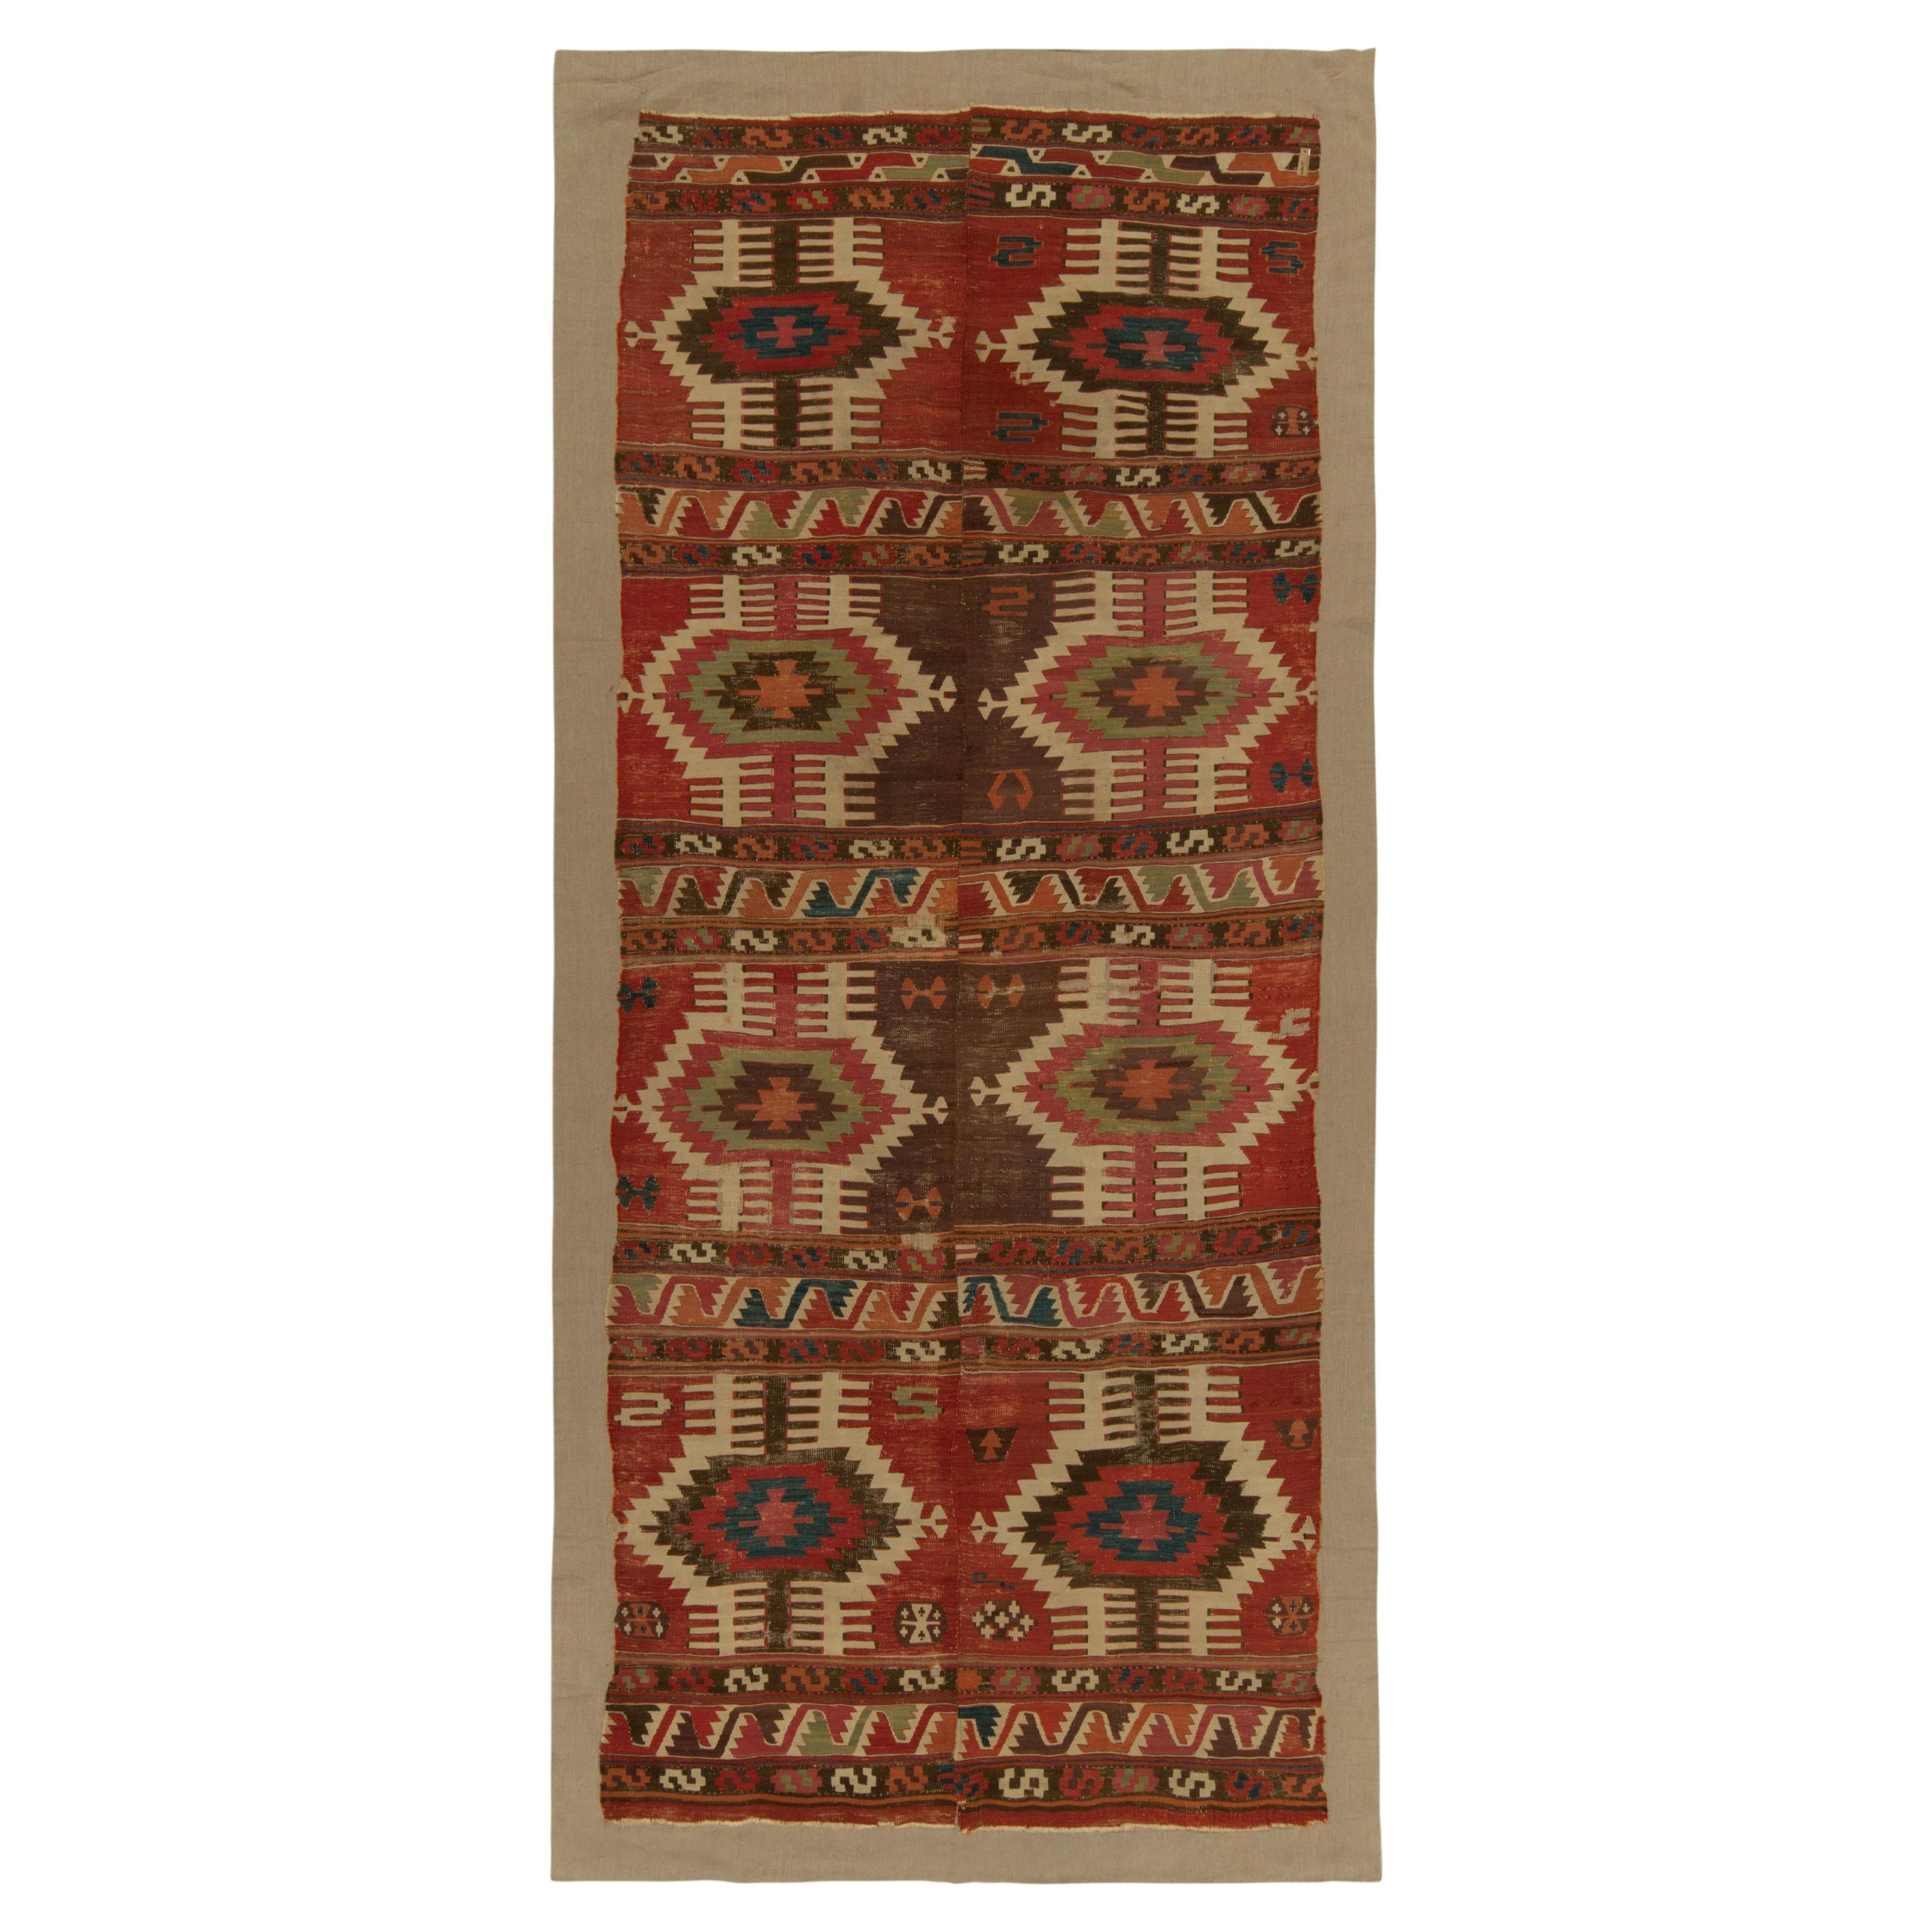 Tapis Kilim tribal ancien à motif géométrique rouge, beige et marron par Rug & Kilim